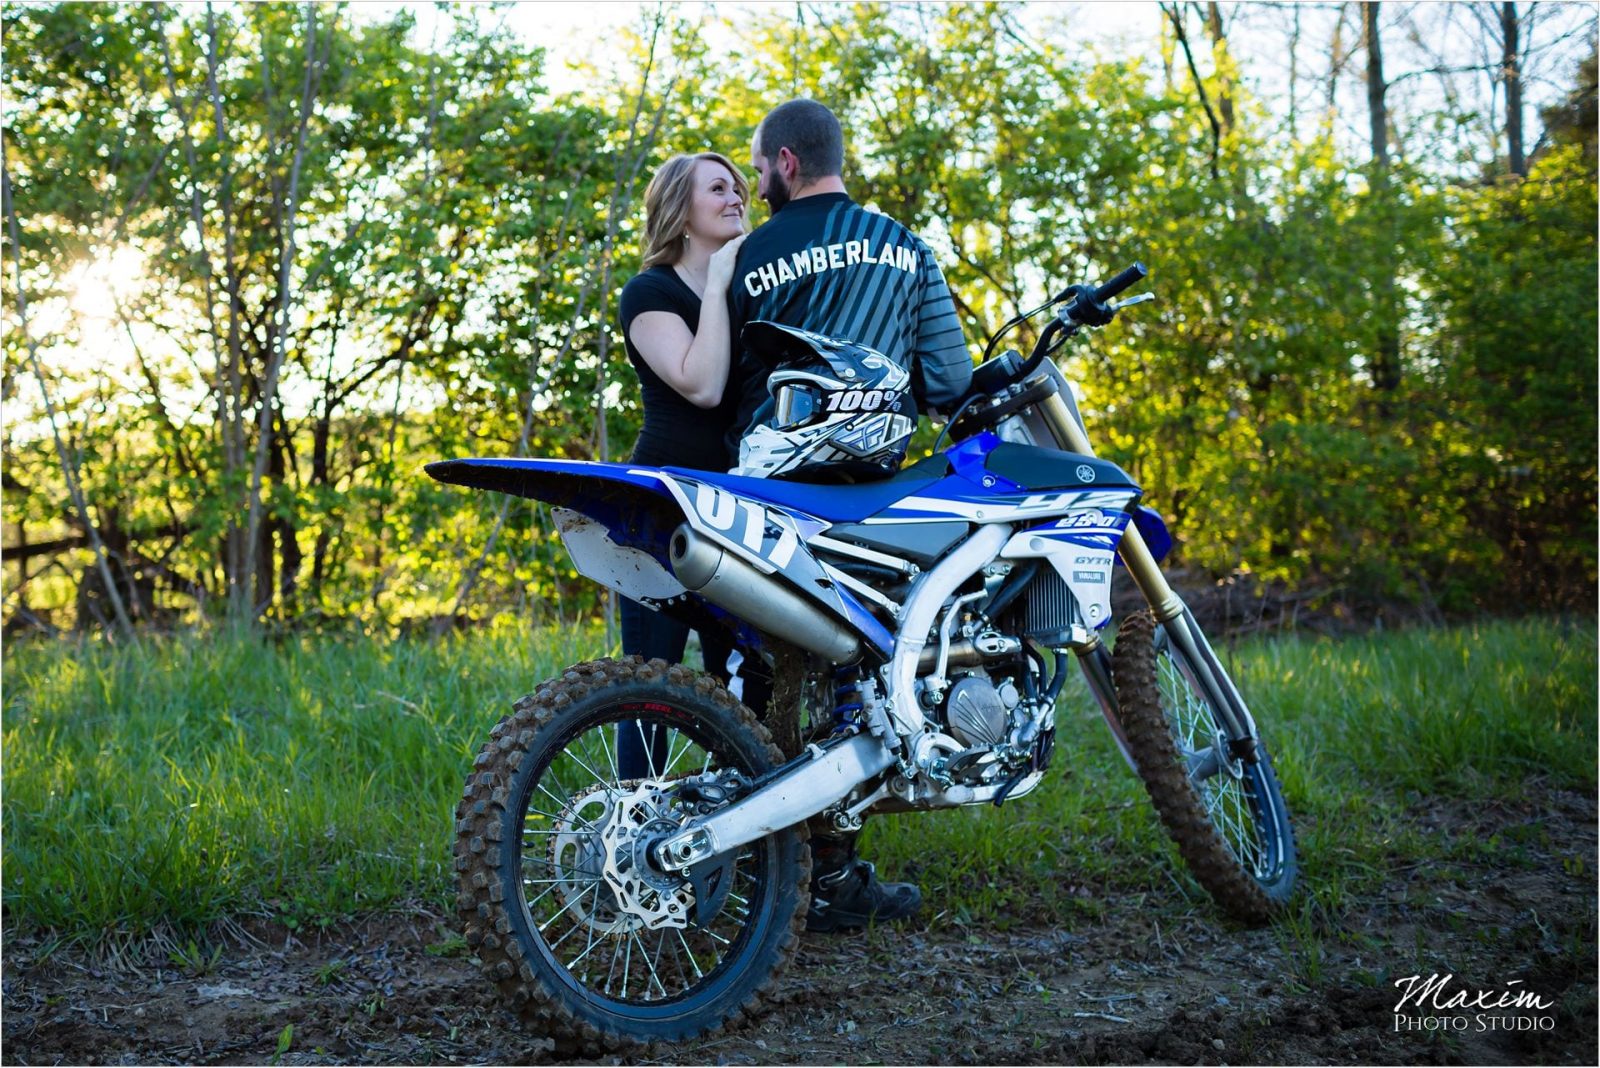 Dayton Wedding Photographers Motorcross bike engagement